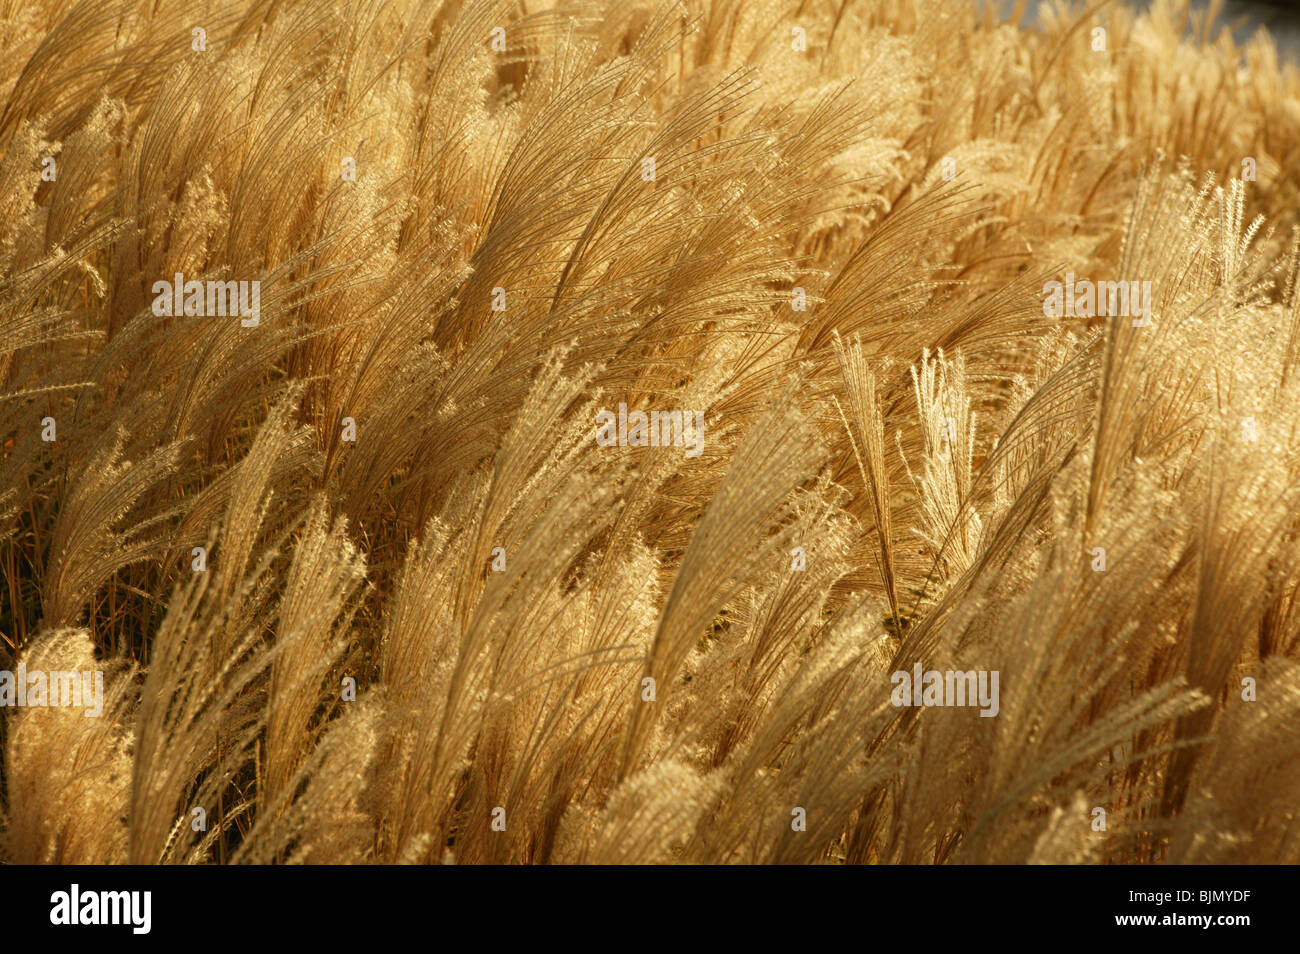 Golden spikes grass crop background pattern Stock Photo